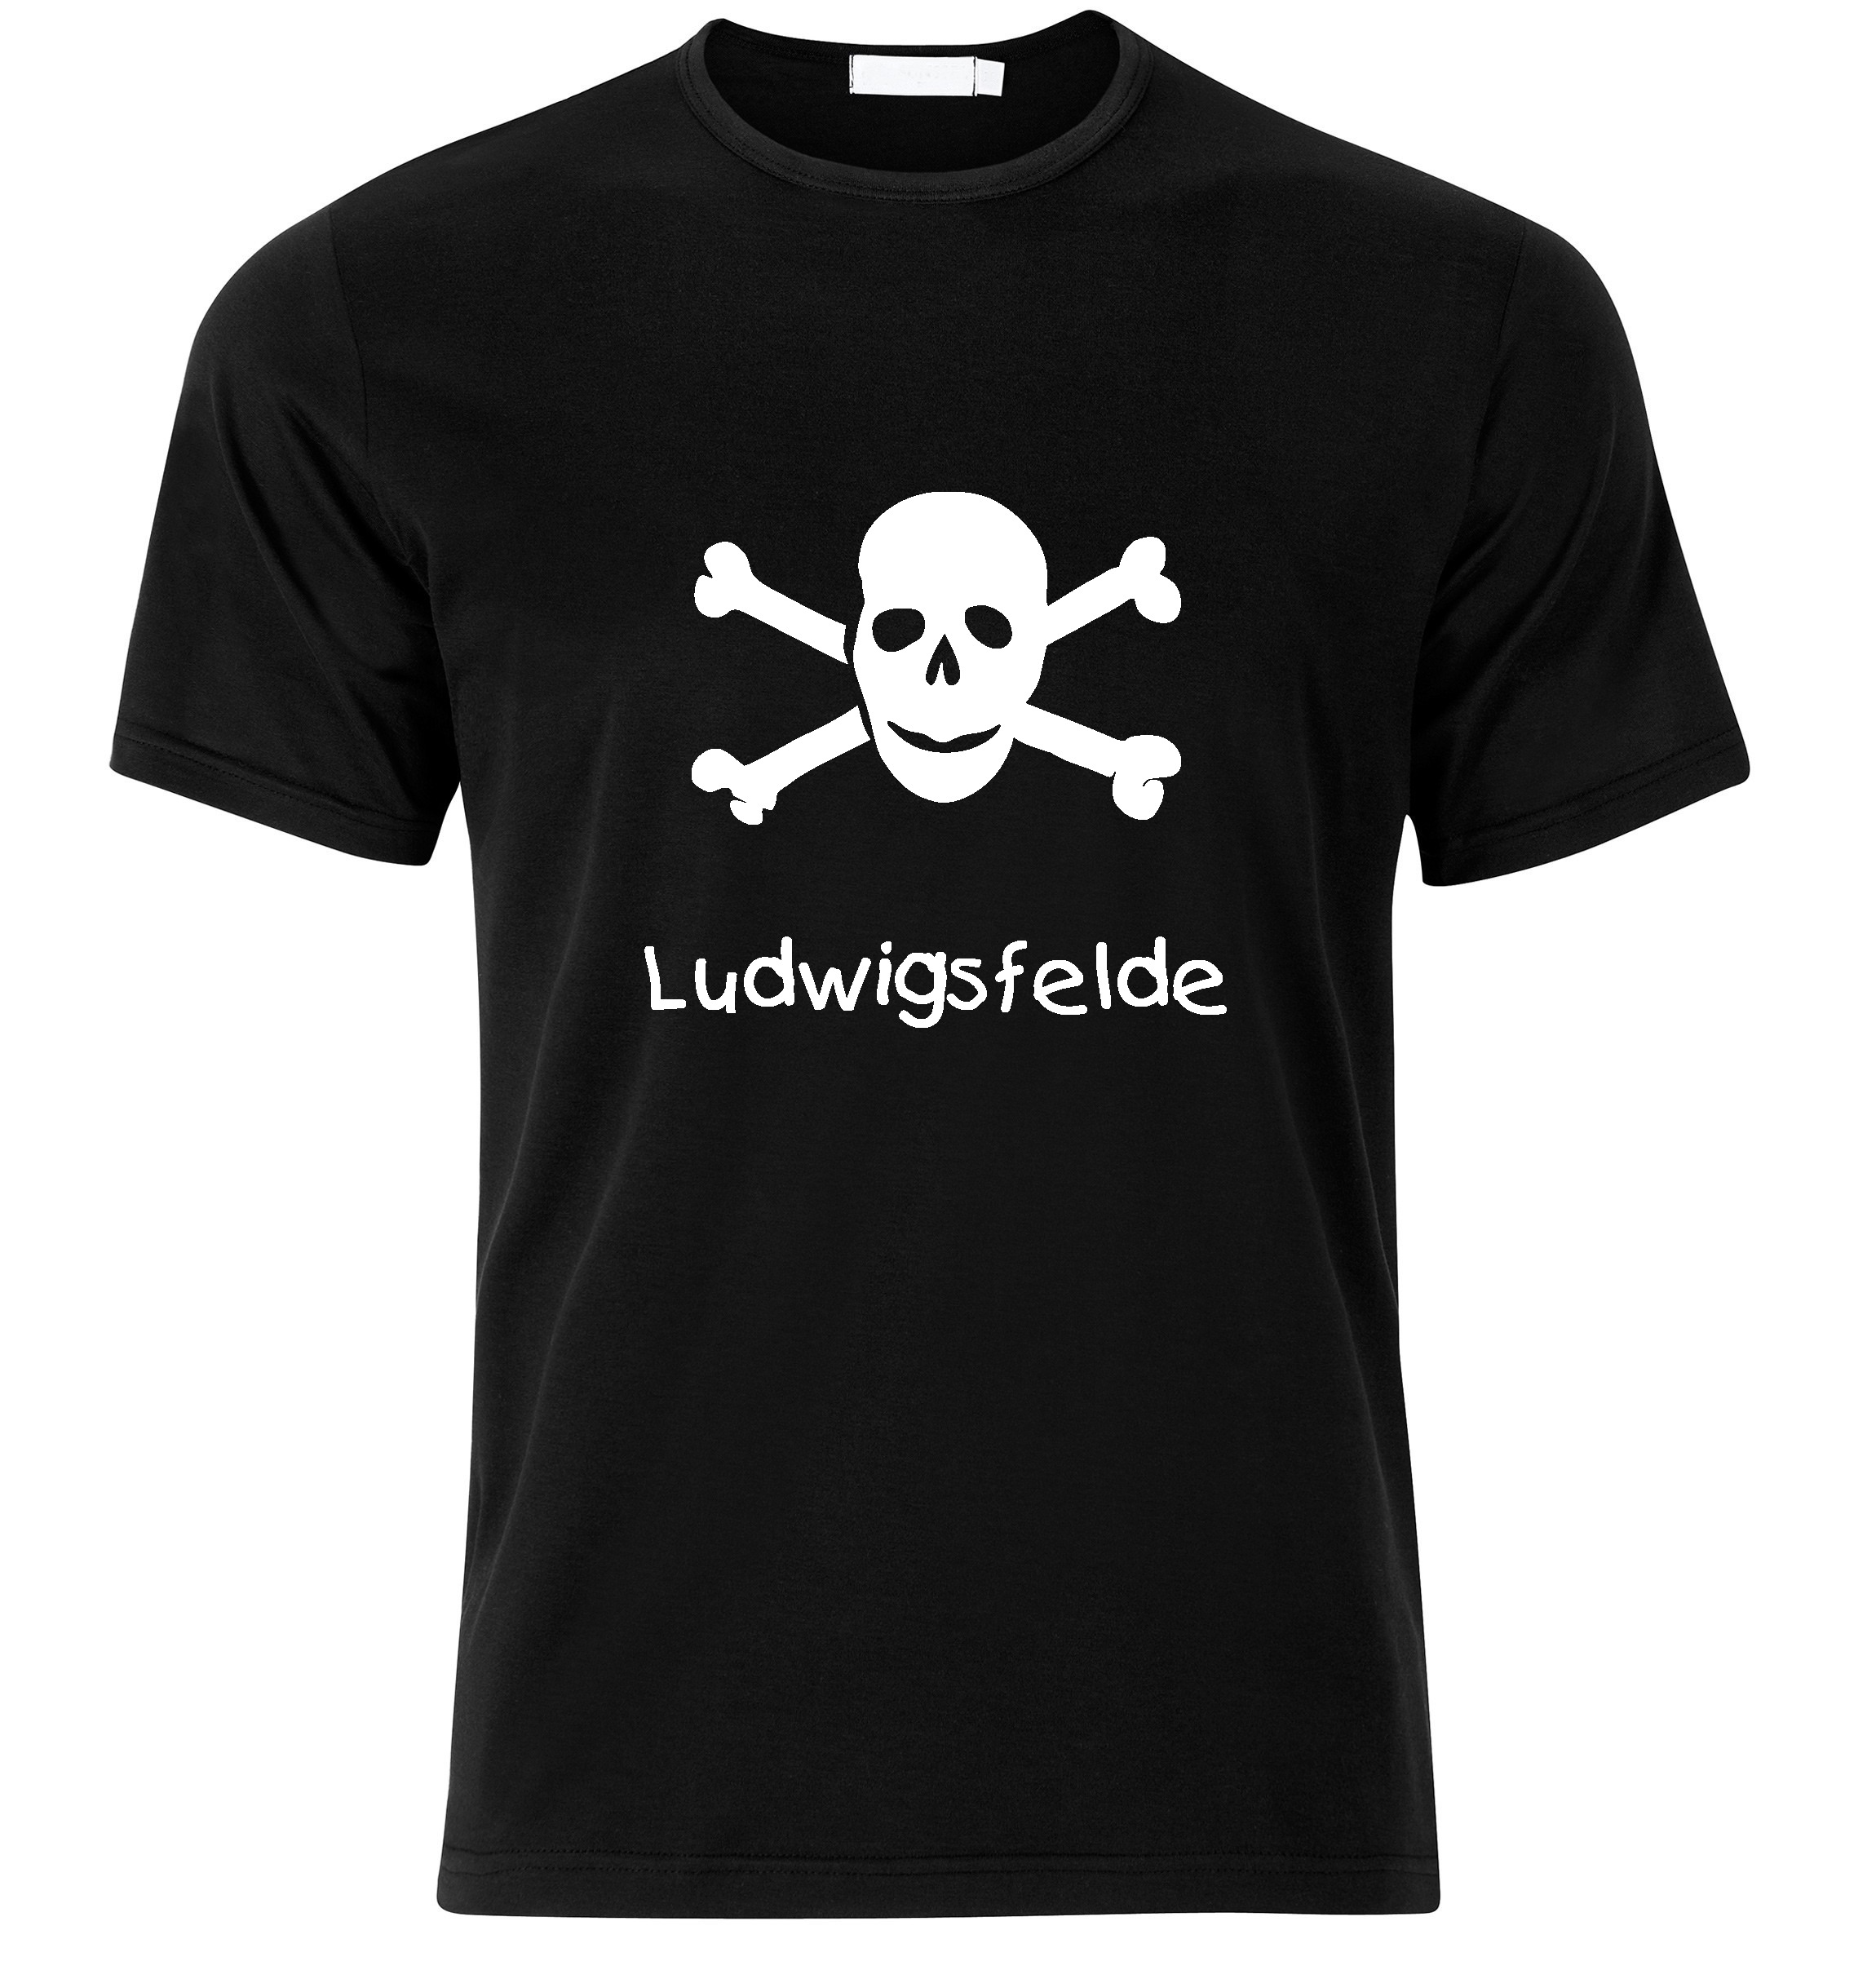 T-Shirt Ludwigsfelde Jolly Roger, Totenkopf